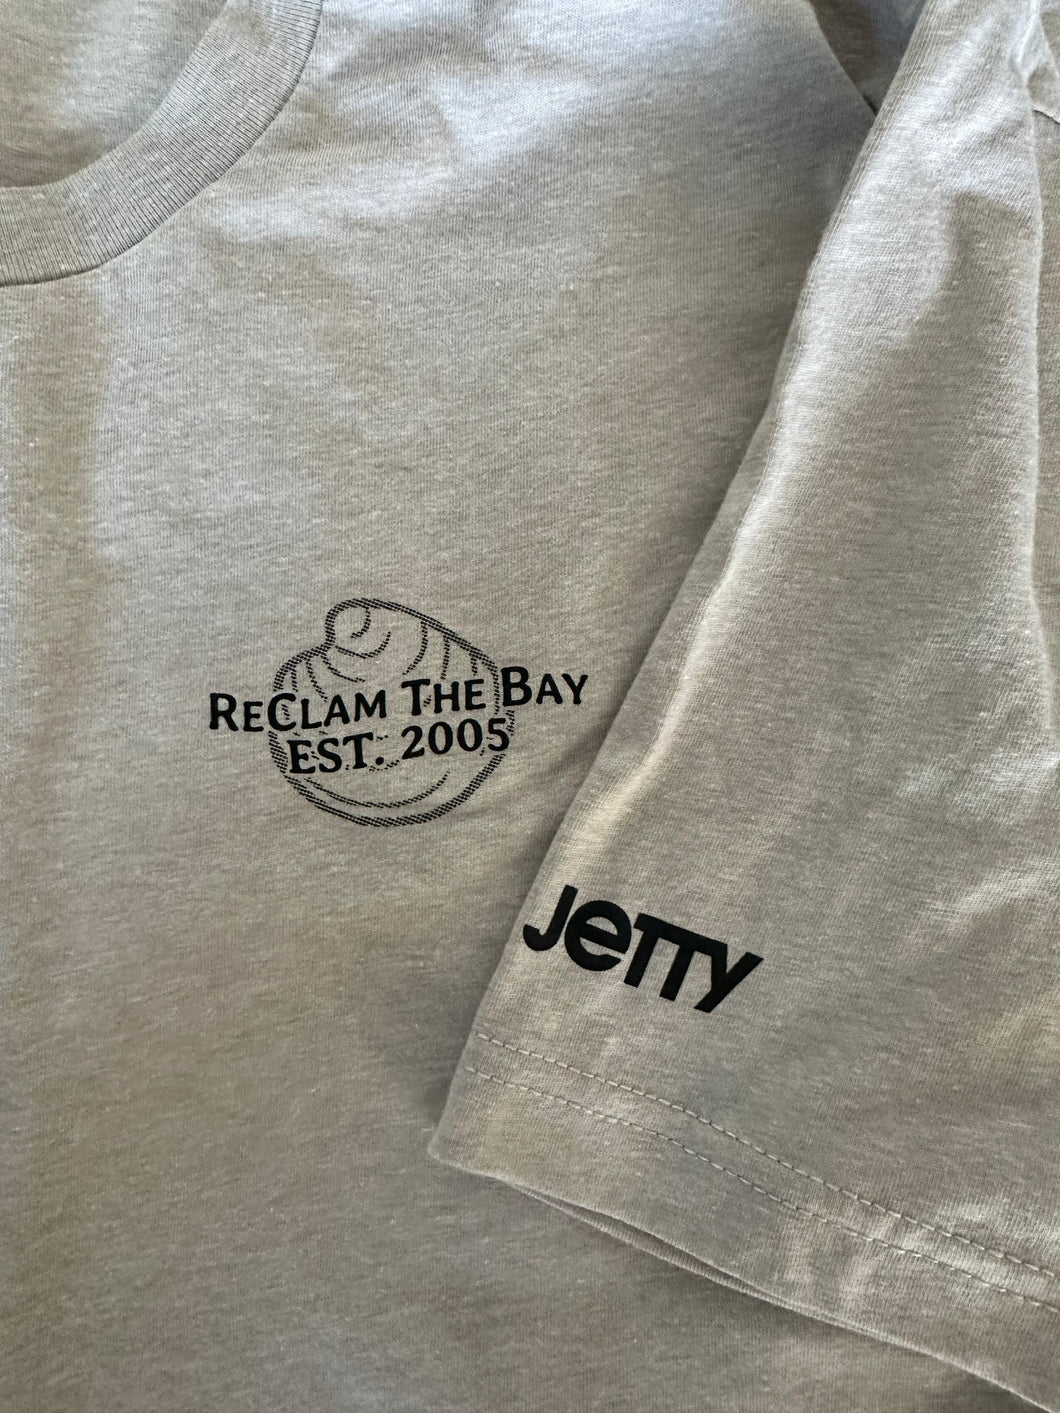 Jetty T Shirt: Upweller Map Design RCTB Shirt